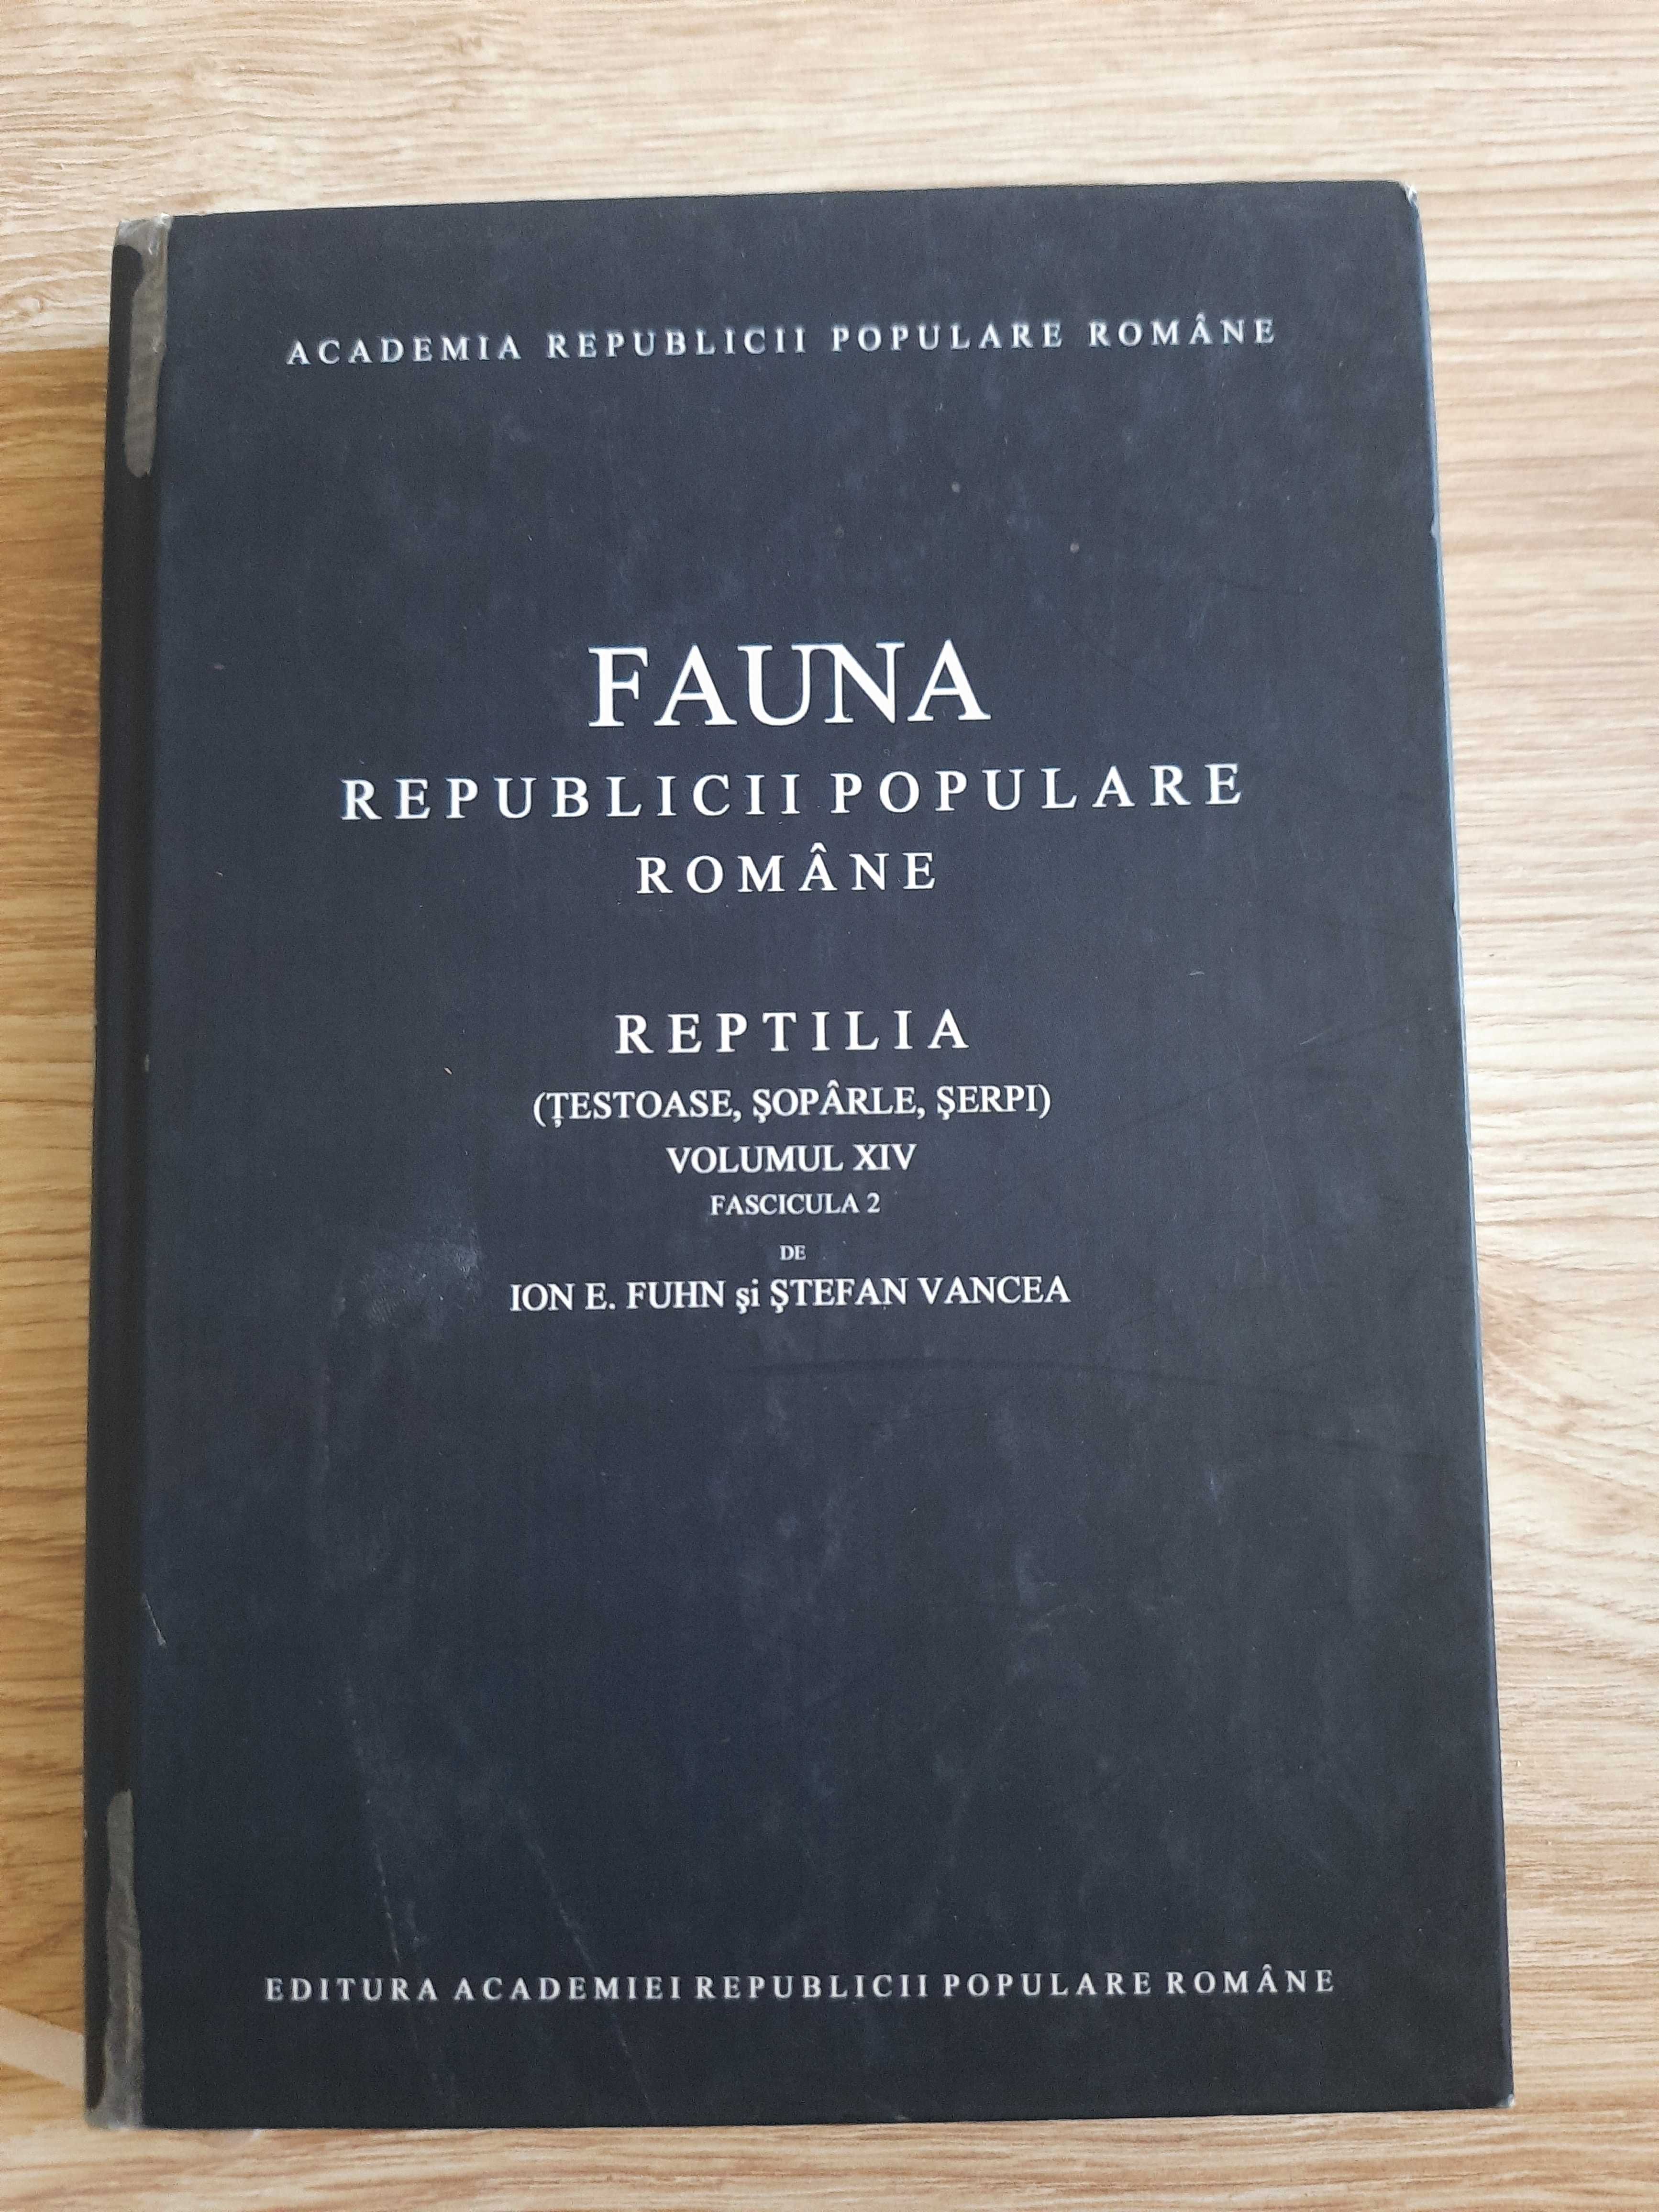 Fauna RPR - Reptilia (Fuhn & Vancea)